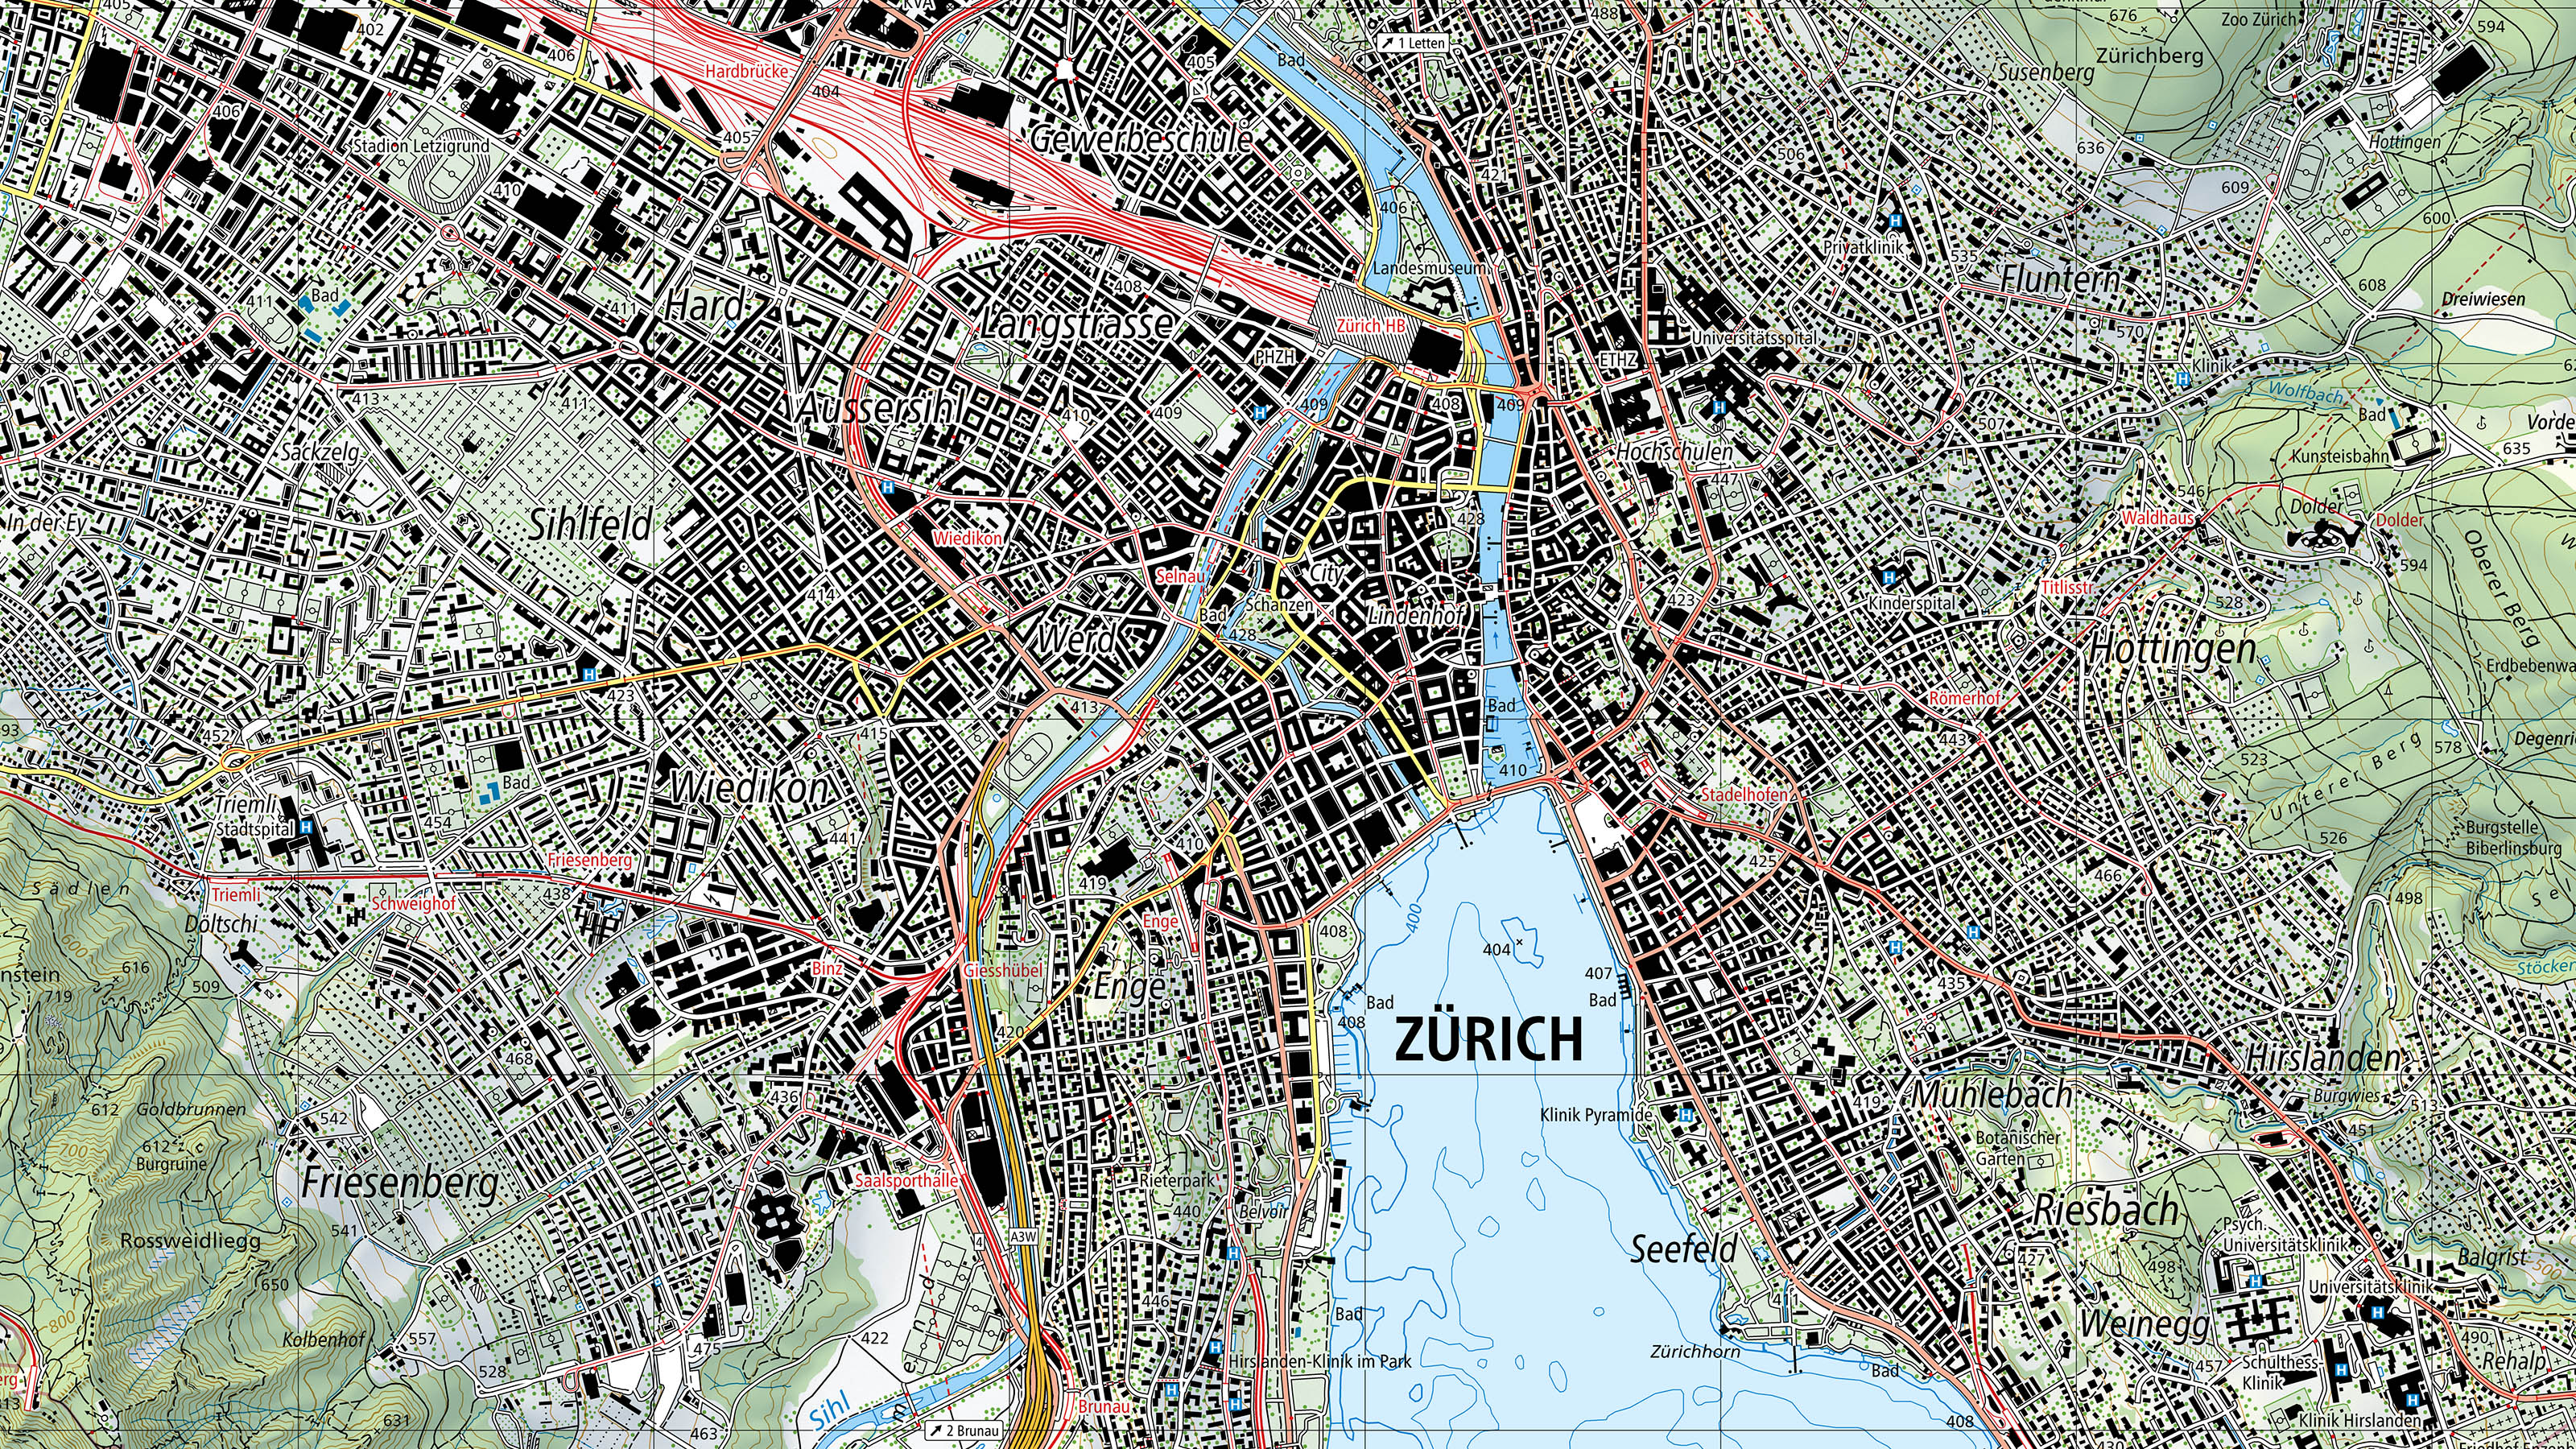 Ausschnitt Zürich aus der Landeskarte im erneuerten Design. Unter anderem treten nun die Bahnlinien rot hervor, die Schrift ist serifenlos und die Strassen nach Verkehrsrelevanz in unterschiedlichen Farbtönen gehalten.